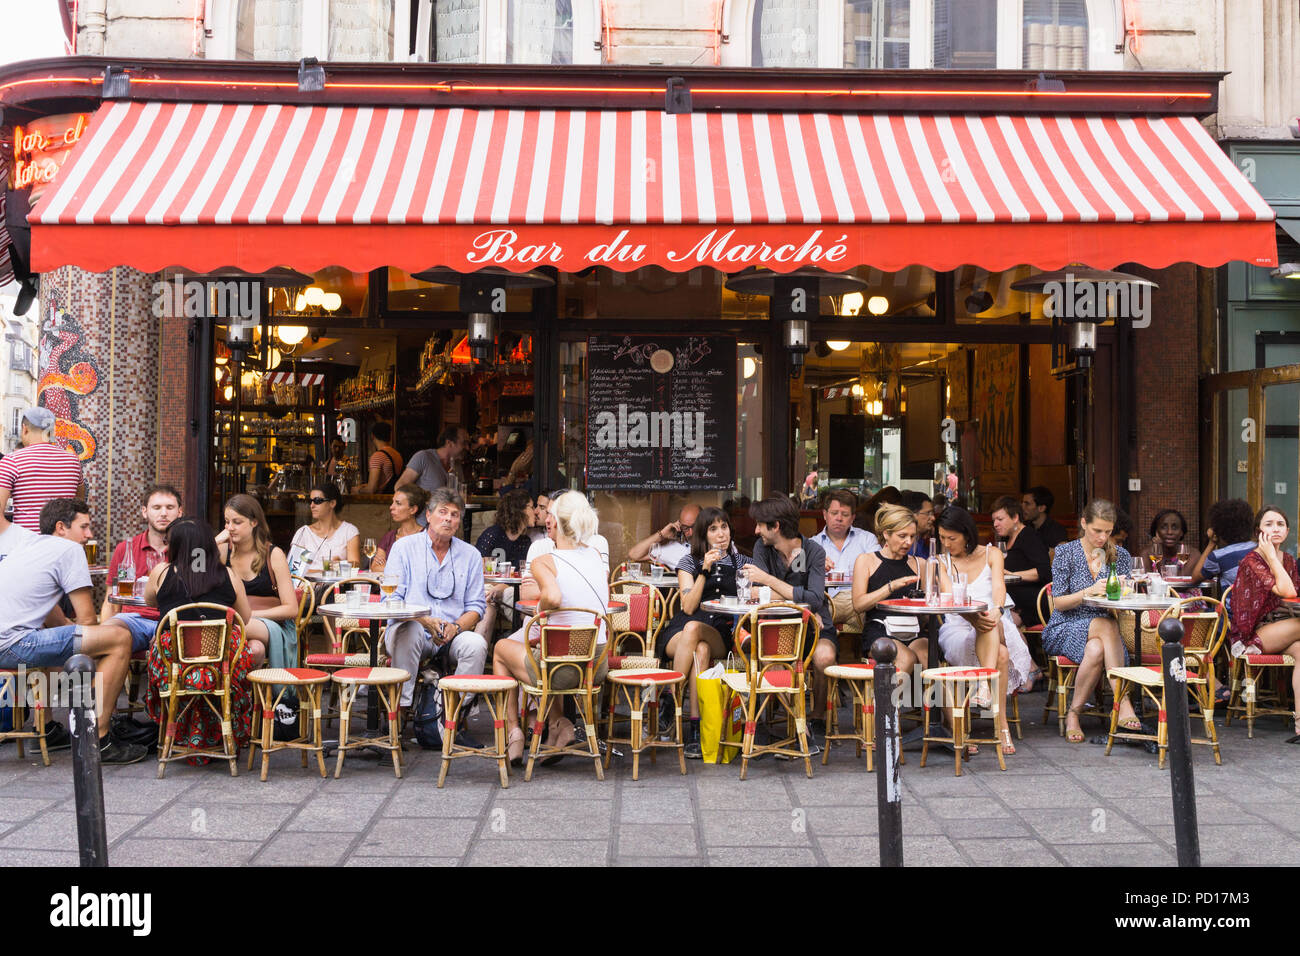 Paris Cafe - Am späten Nachmittag an der Bar du Marche in der Rue de Buci im Saint Germain in Paris, Frankreich, Europa. Stockfoto